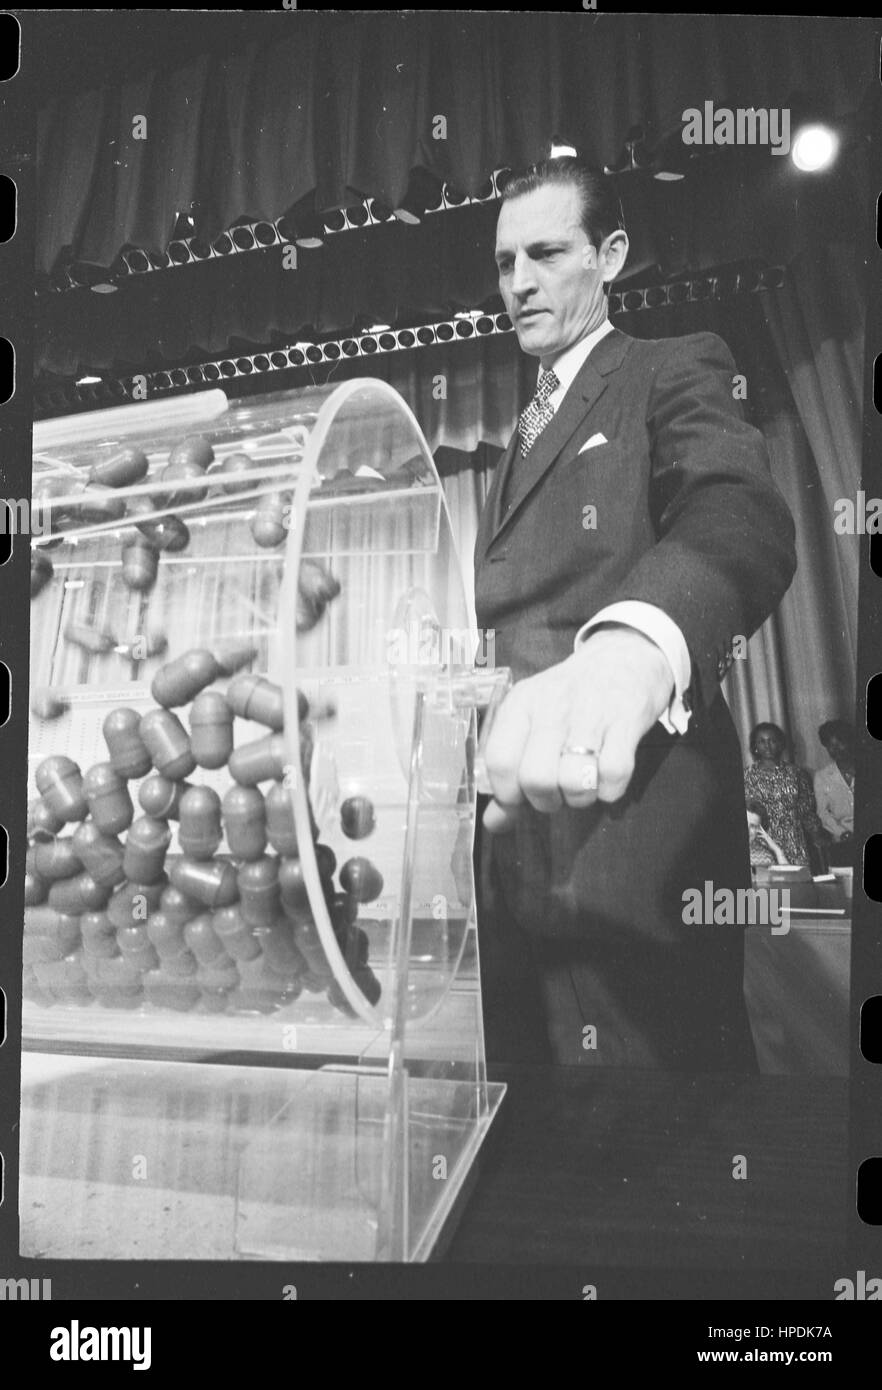 Curtis W Tarr, directeur de Le système de service sélectif, transforme le bidon contenant des capsules de numéros de projet à l'Assemblée Projet de loterie, Washington, DC, 02/02/1972. Banque D'Images